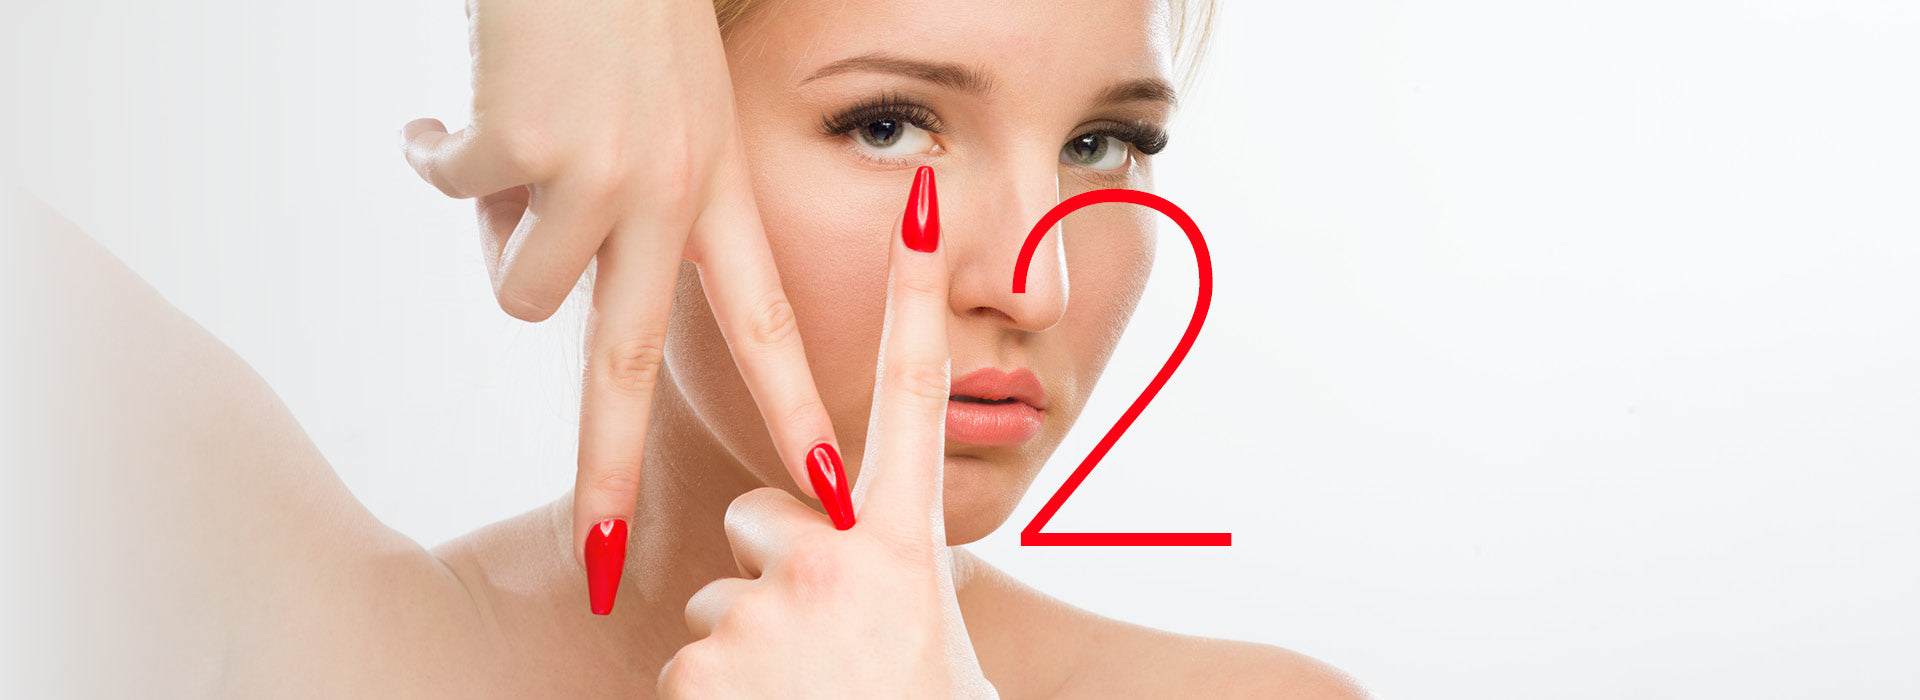 Bild einer Frau, welche den Buchstaben N mit ihren Fingern formt. Neben dem N befindet sich eine 2, um gemeinsam den Markennamen N2 zu deuten. Die Fingernägel und die 2 sind leuchtend rot.